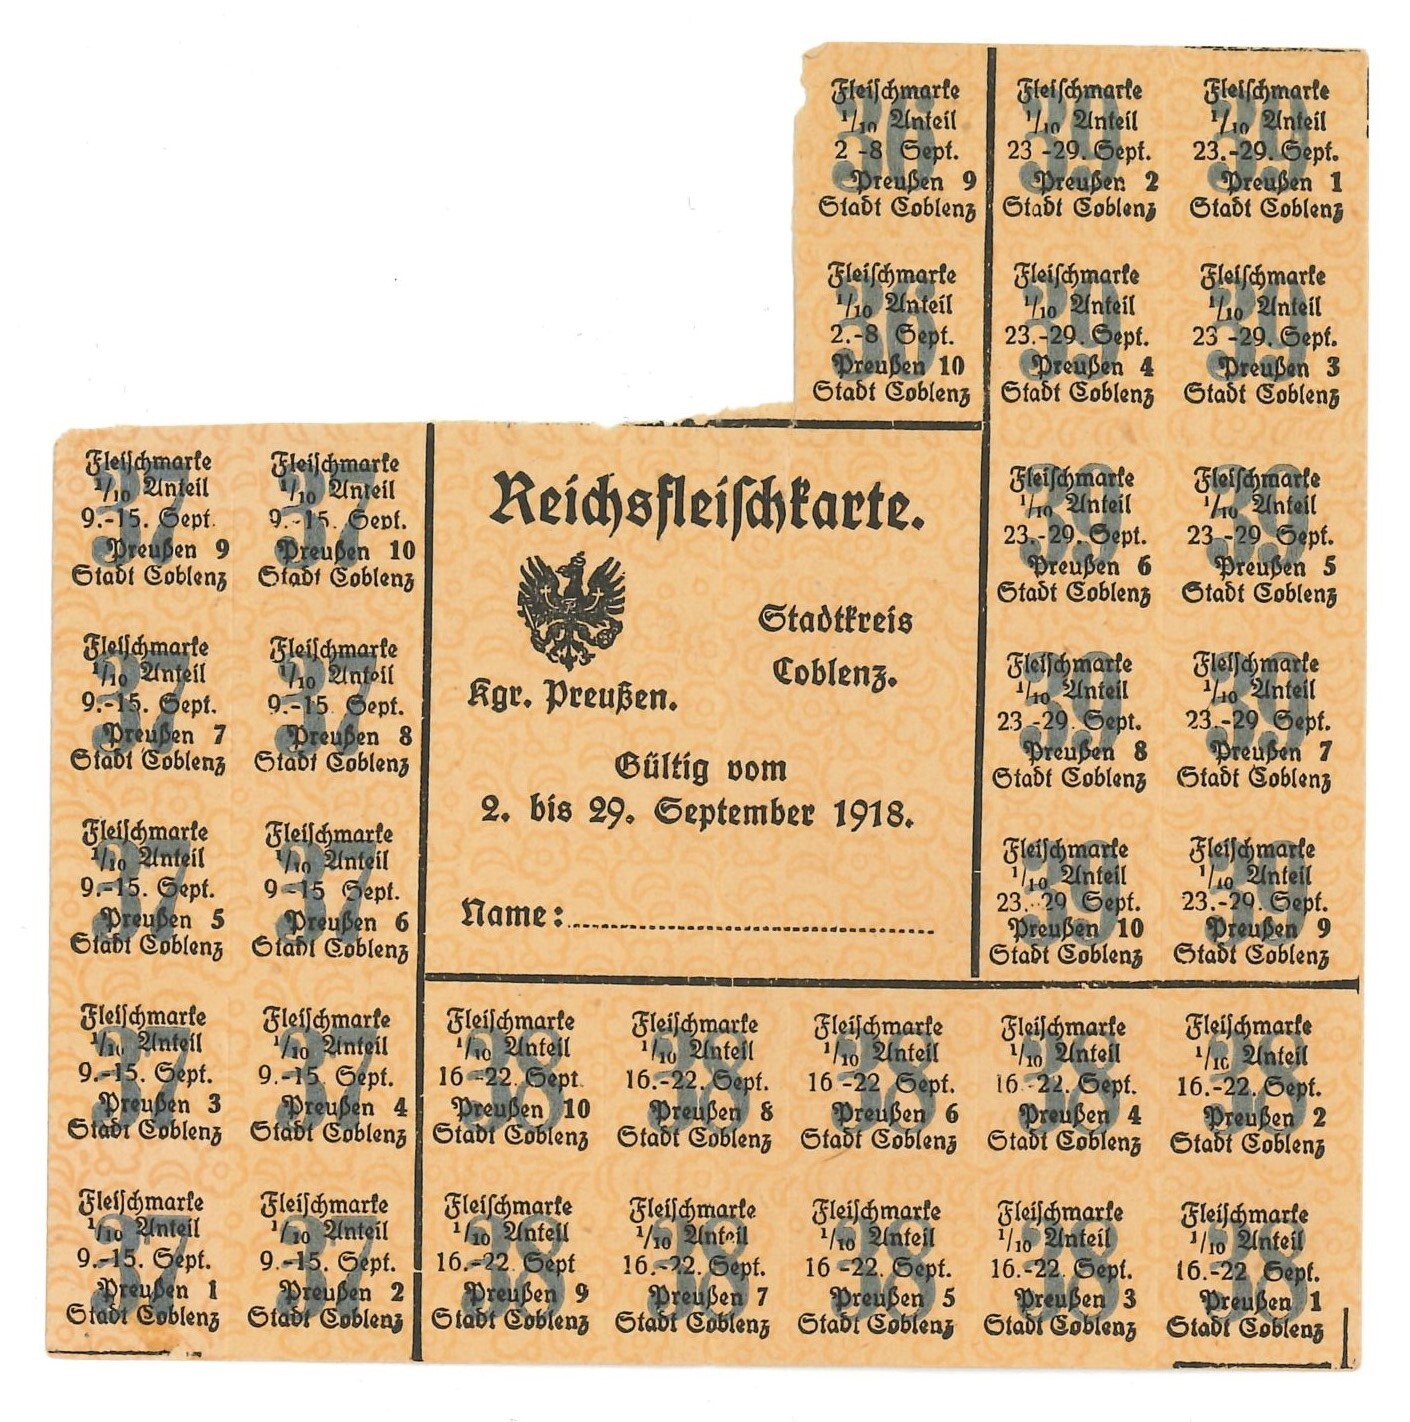 Reichsfleischkarte.jpg